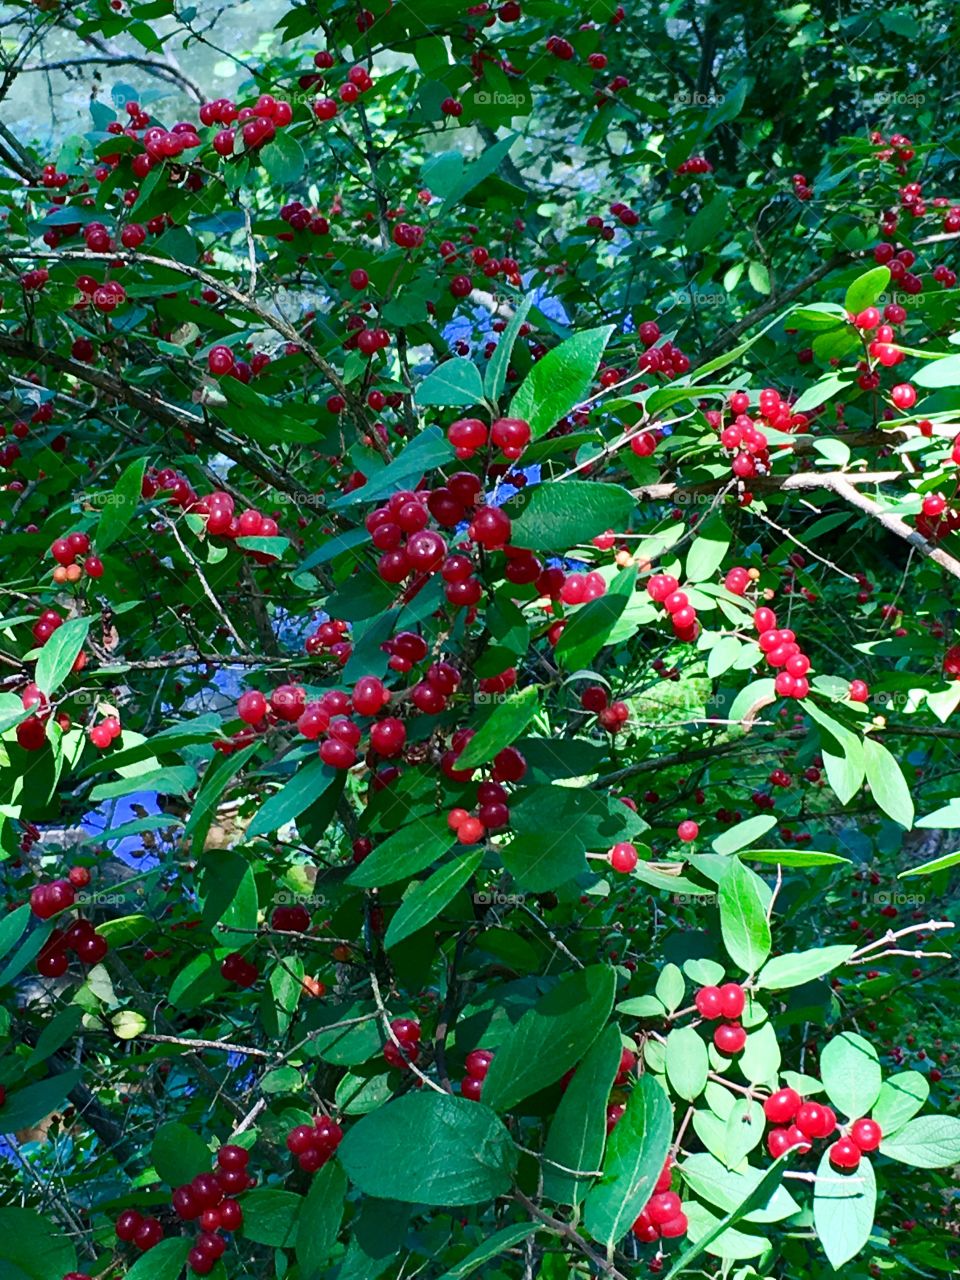 Beautiful berries in lush park setting